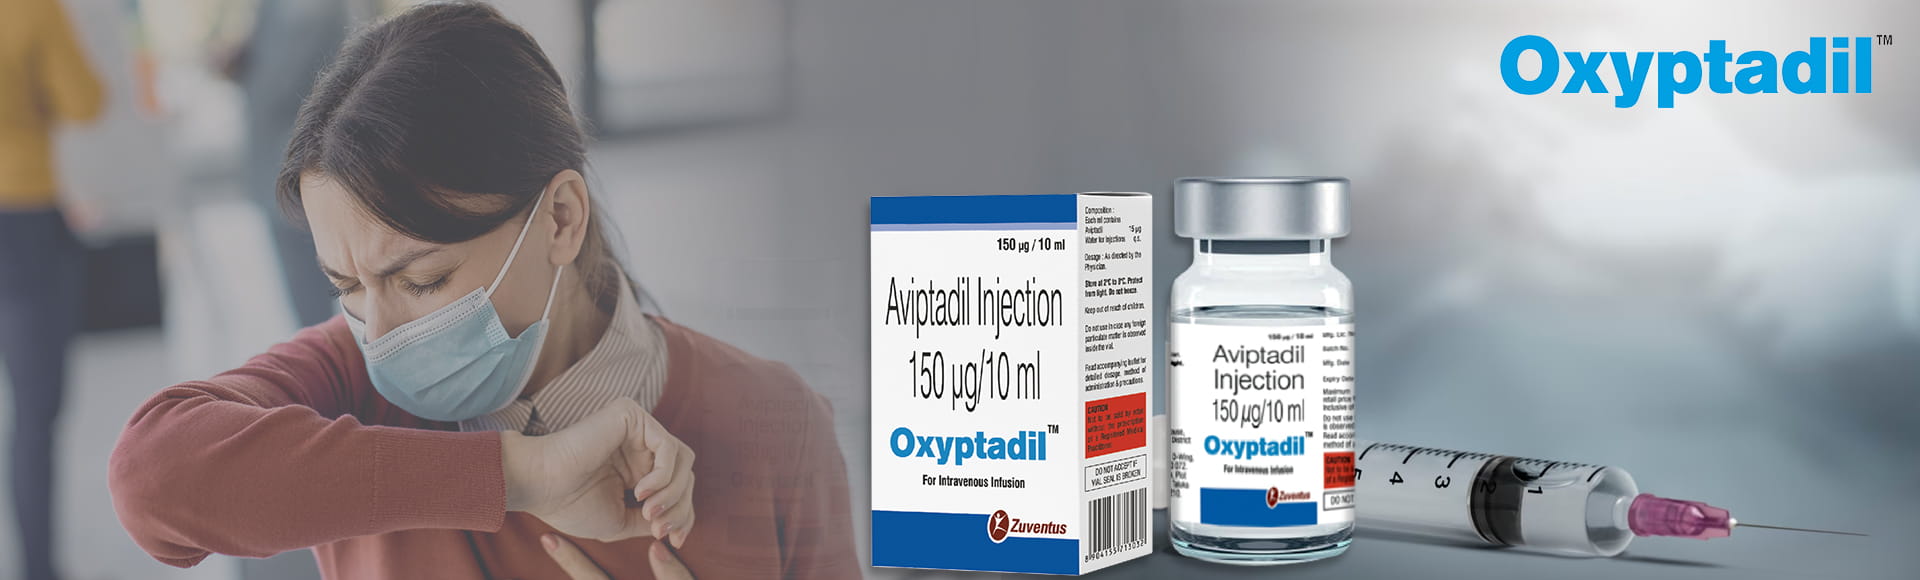 Oxyptadil